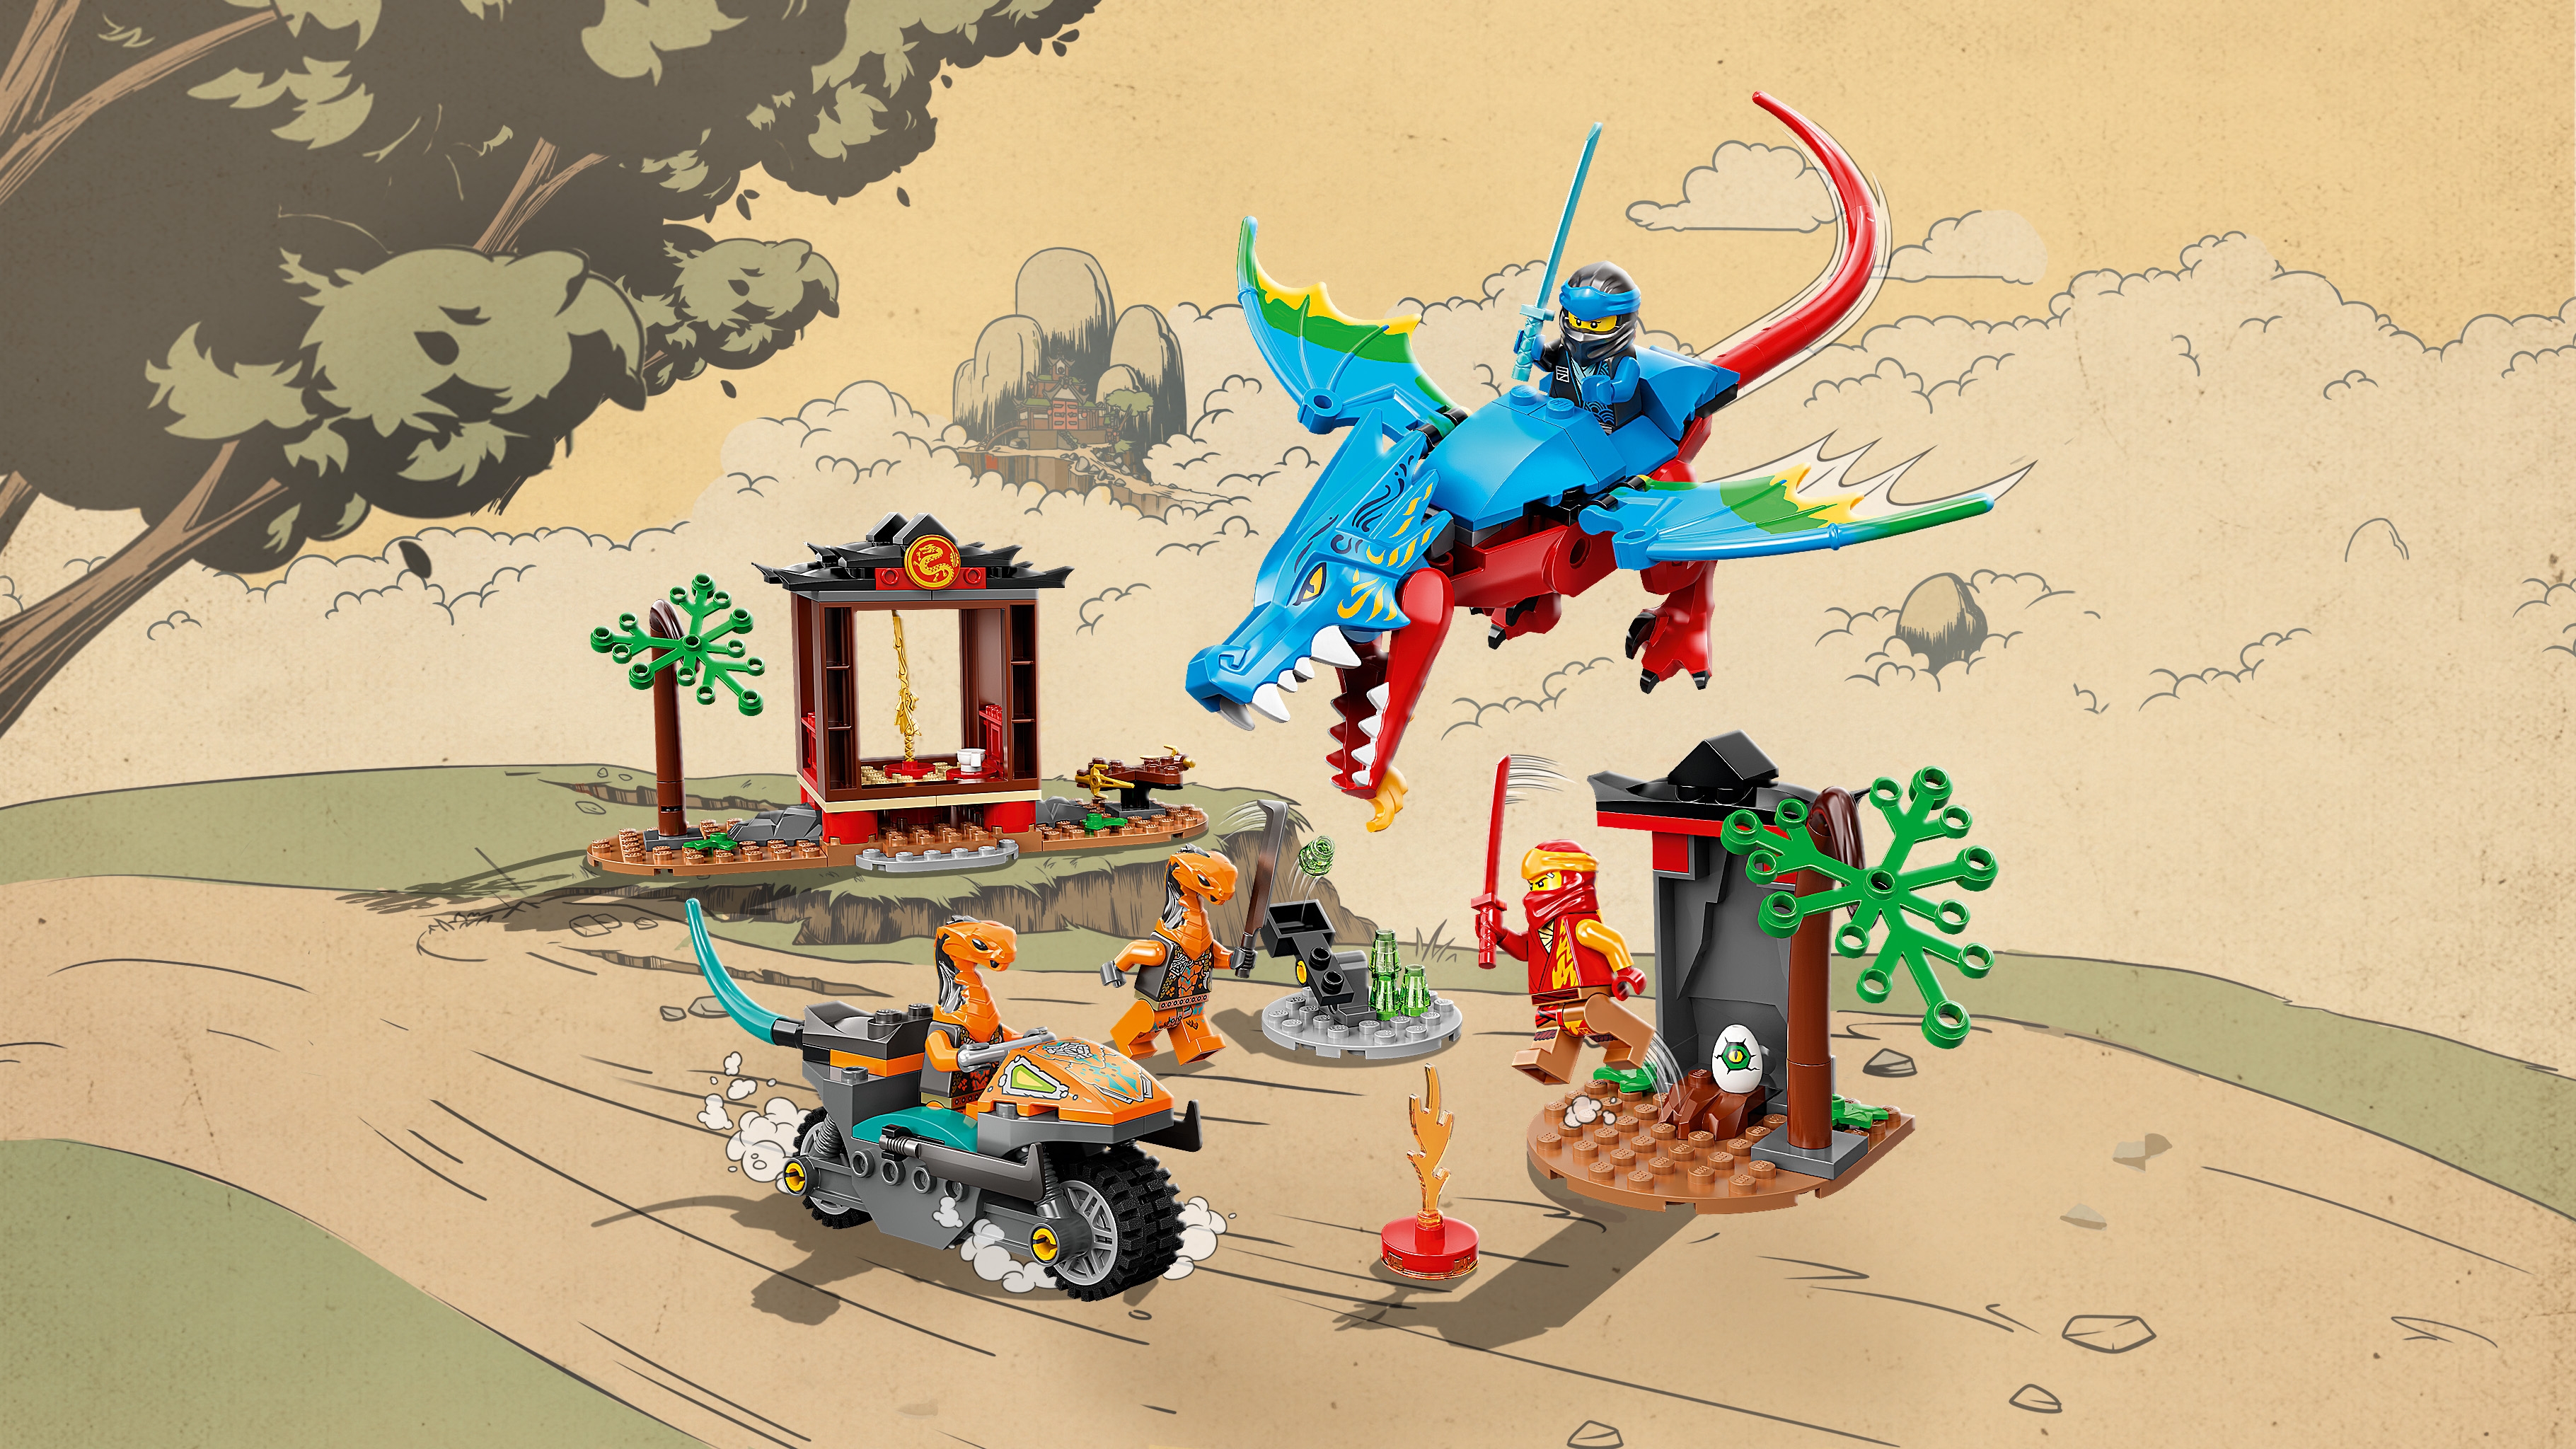 Chen's Return - LEGO.com for kids